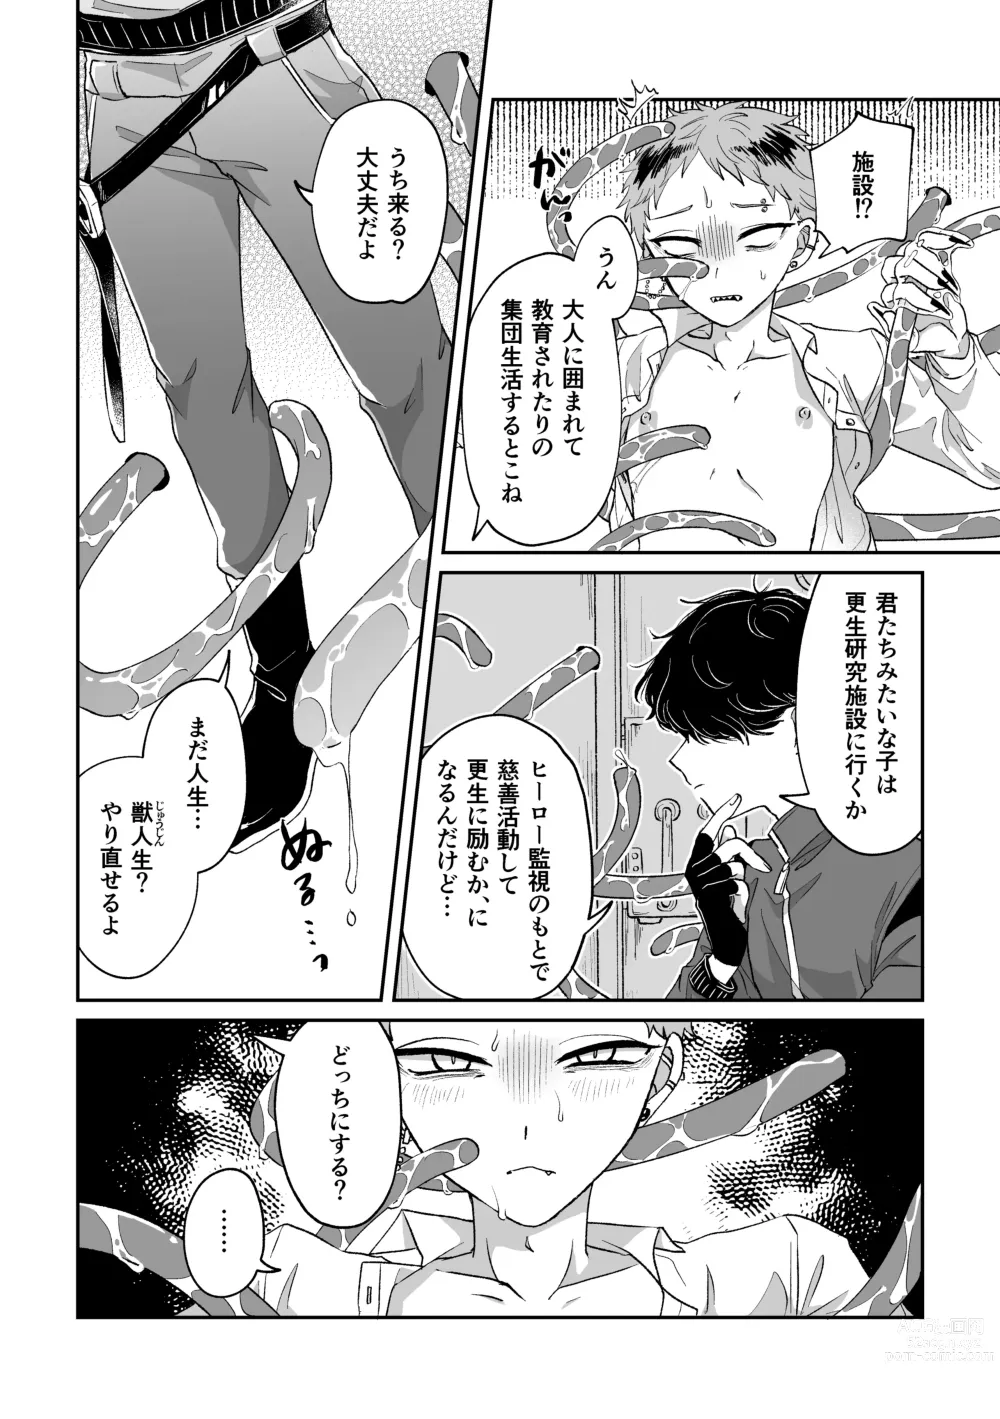 Page 29 of doujinshi Warui kedo Kore Ero Manga nanda yo ne